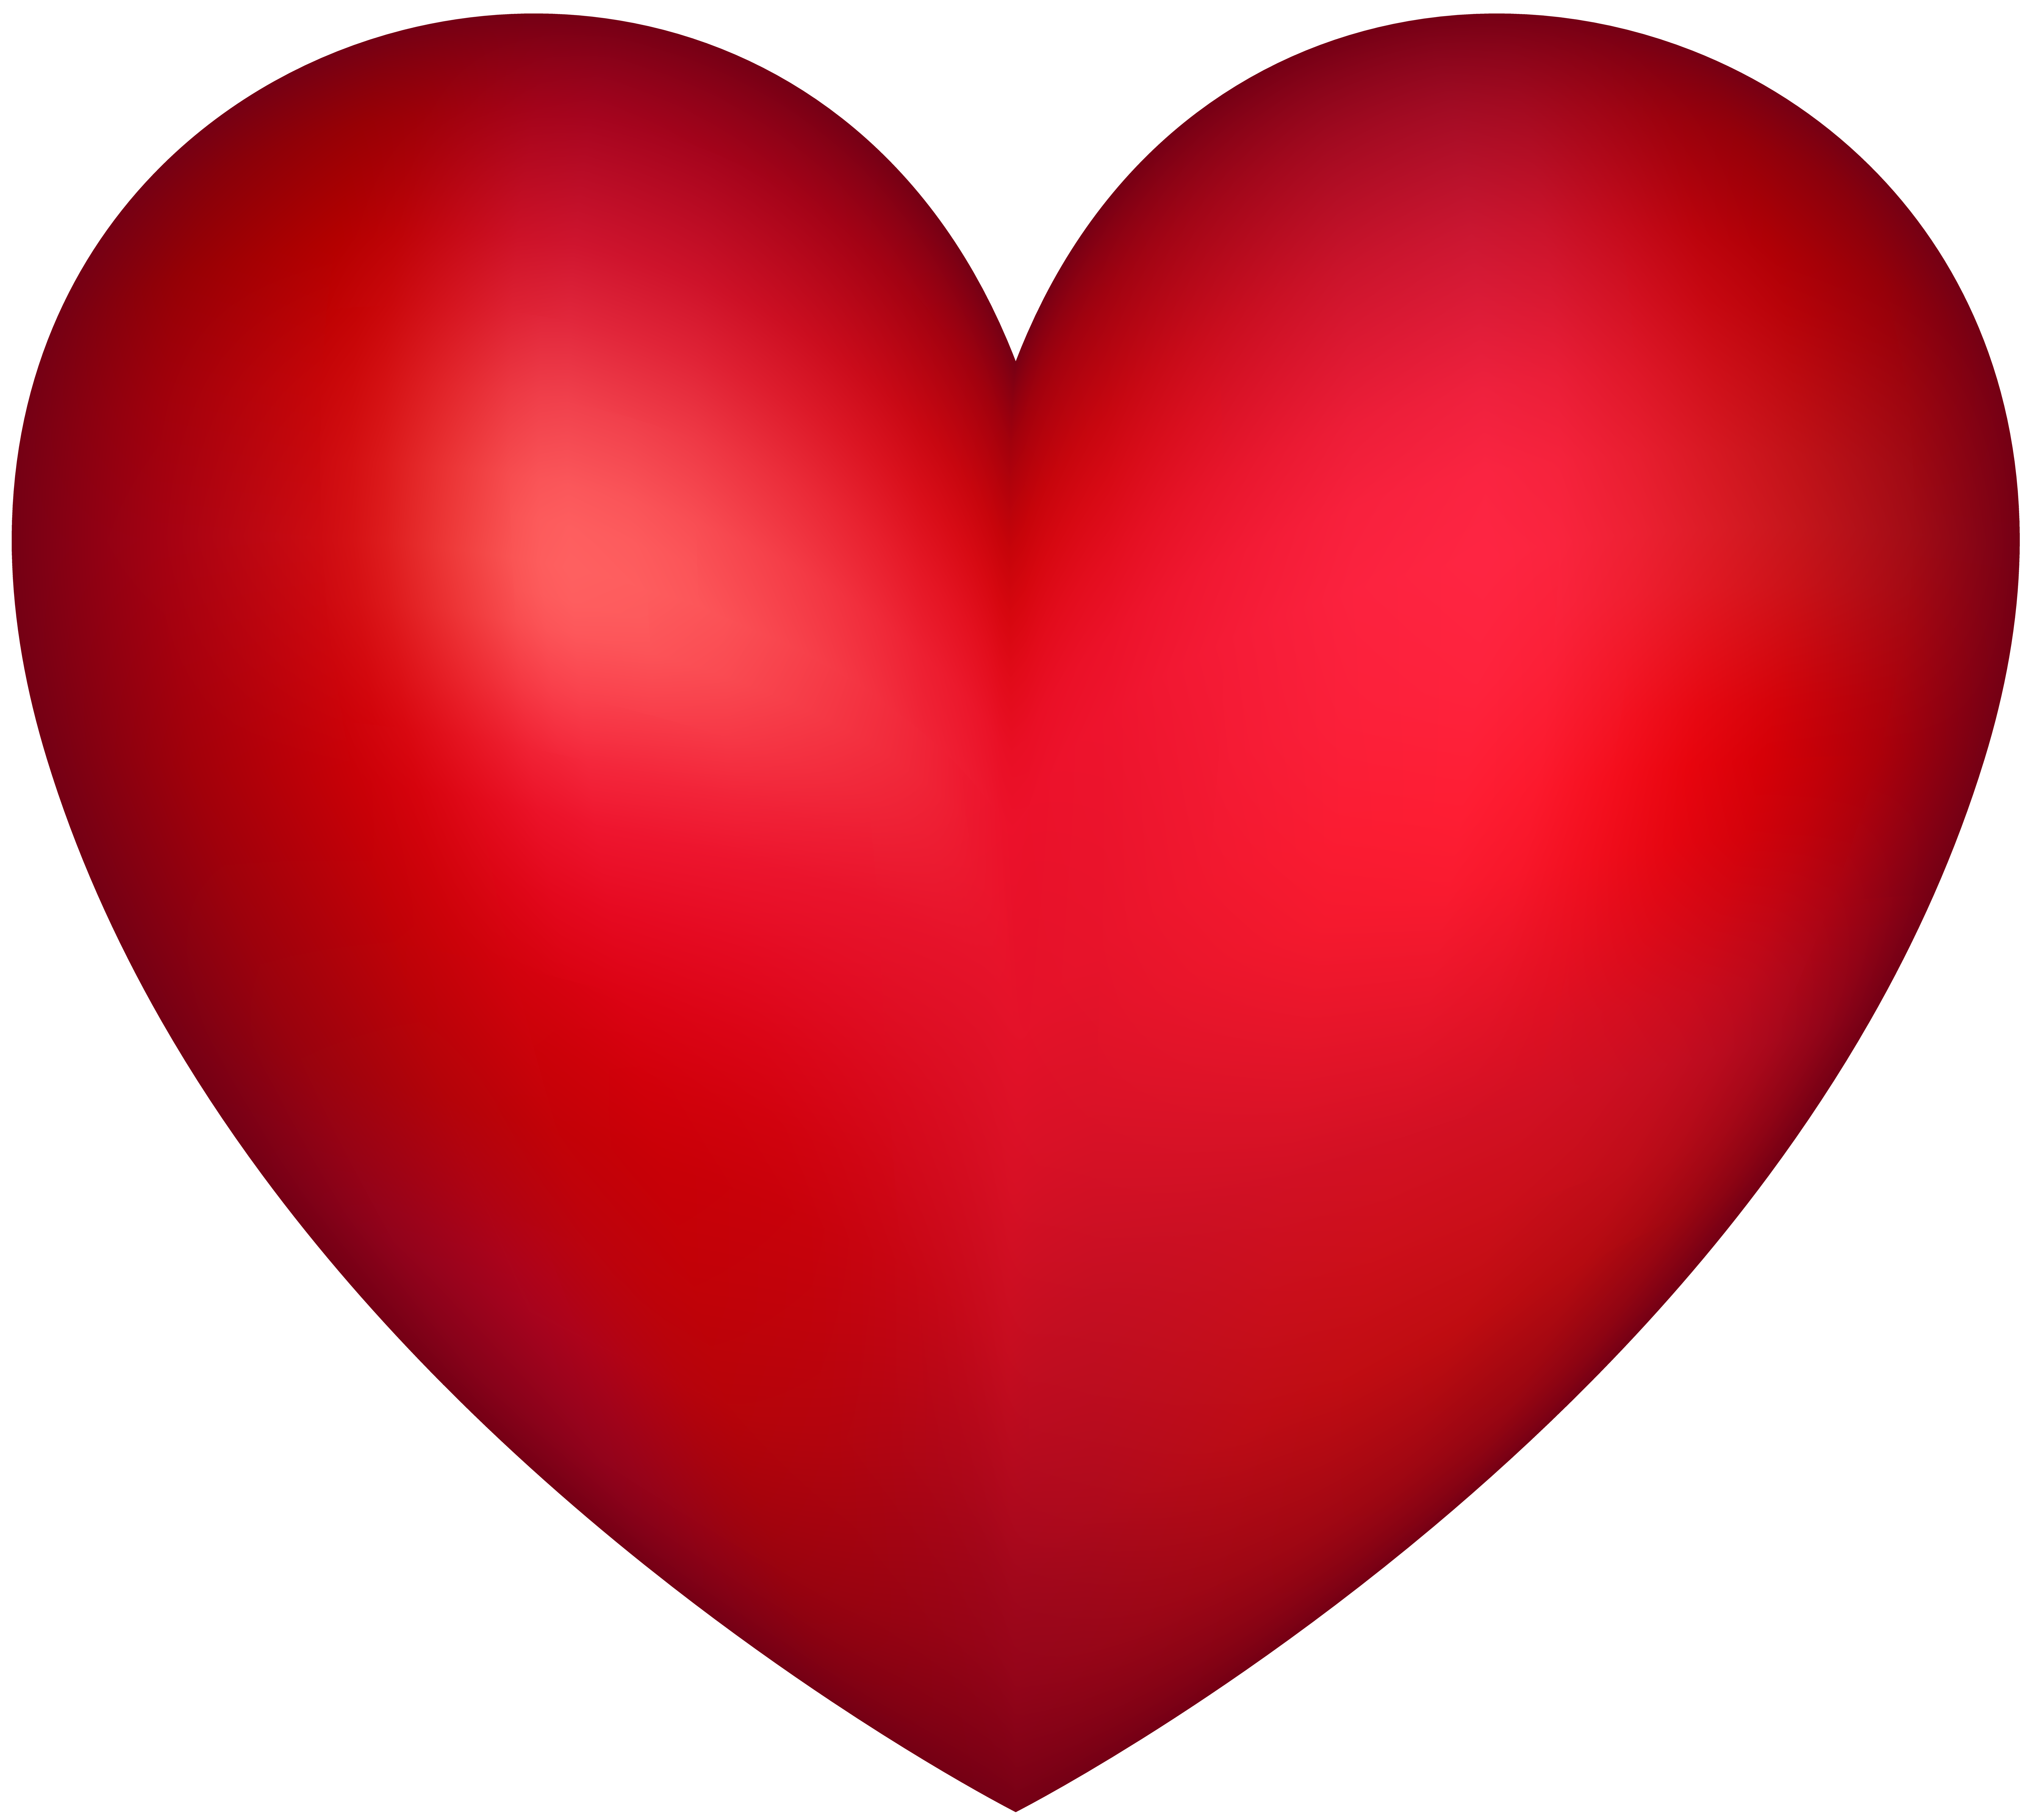 Па сердце. С красным сердцем. Огромное сердечко. Сердце клипарт. Сердце картинка.